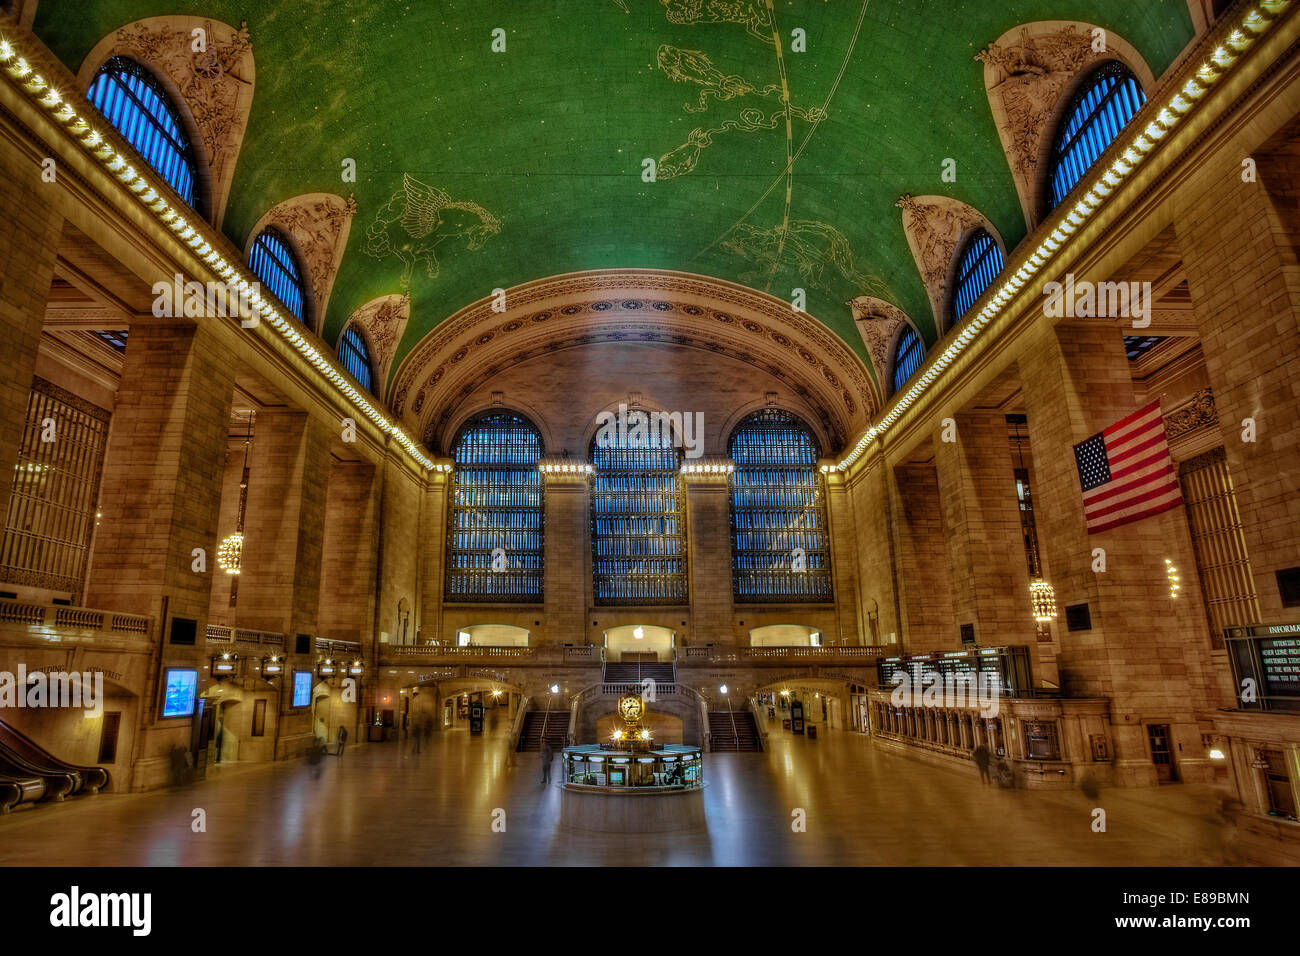 Grand Central Terminal - der zentralen Eingangsbereich des historischen Grand Central Terminal in New York City. Diese Ansicht zeigt die gesamte Bahnhofshalle einschließlich eines Teils des schönen Darstellung des Nachthimmels über die Decke gemalt, und die berühmten Messing Uhr über den Informationsstand. Grand Central Terminal, umgebaut im Jahre 1913, feierte im Jahr 2013 sein 100-jähriges Bestehen. Stockfoto